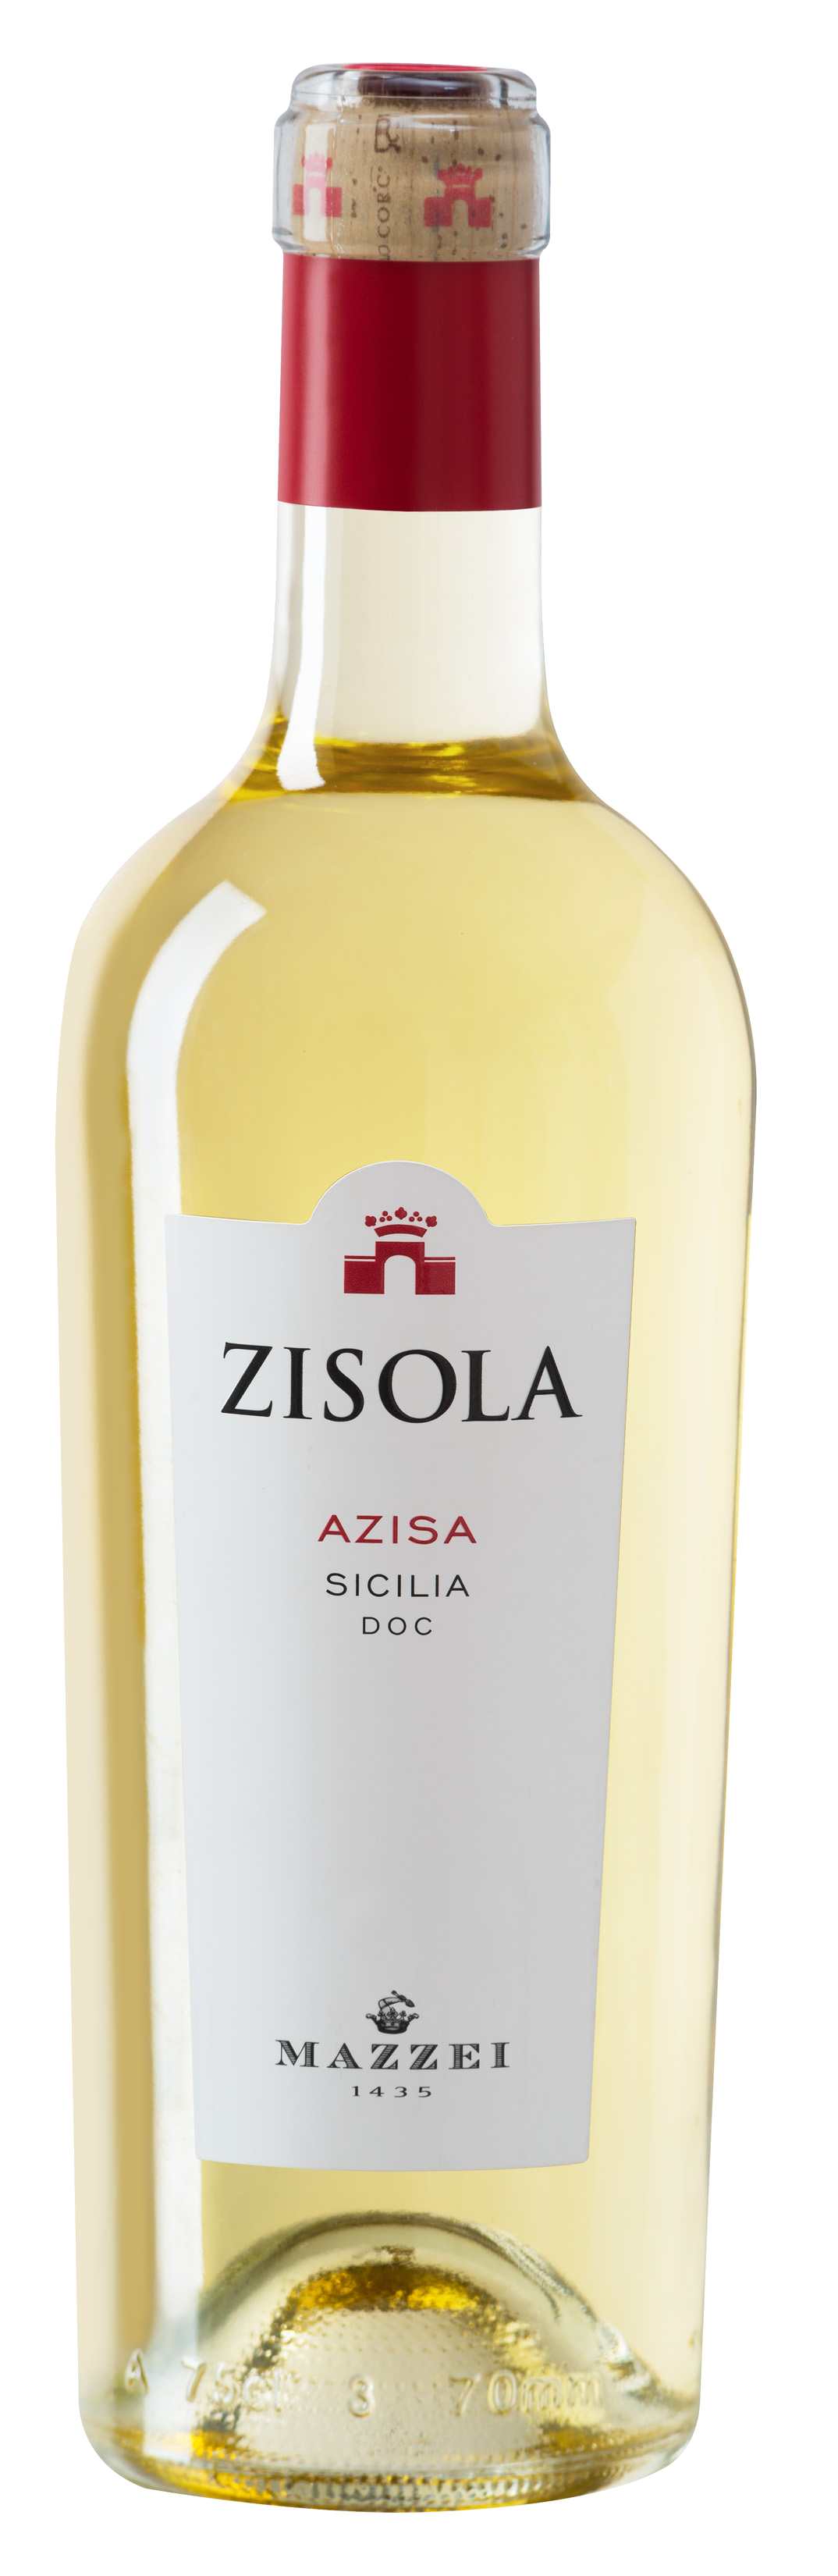 Bottle of Zisola Azisa Sicilia White Wine